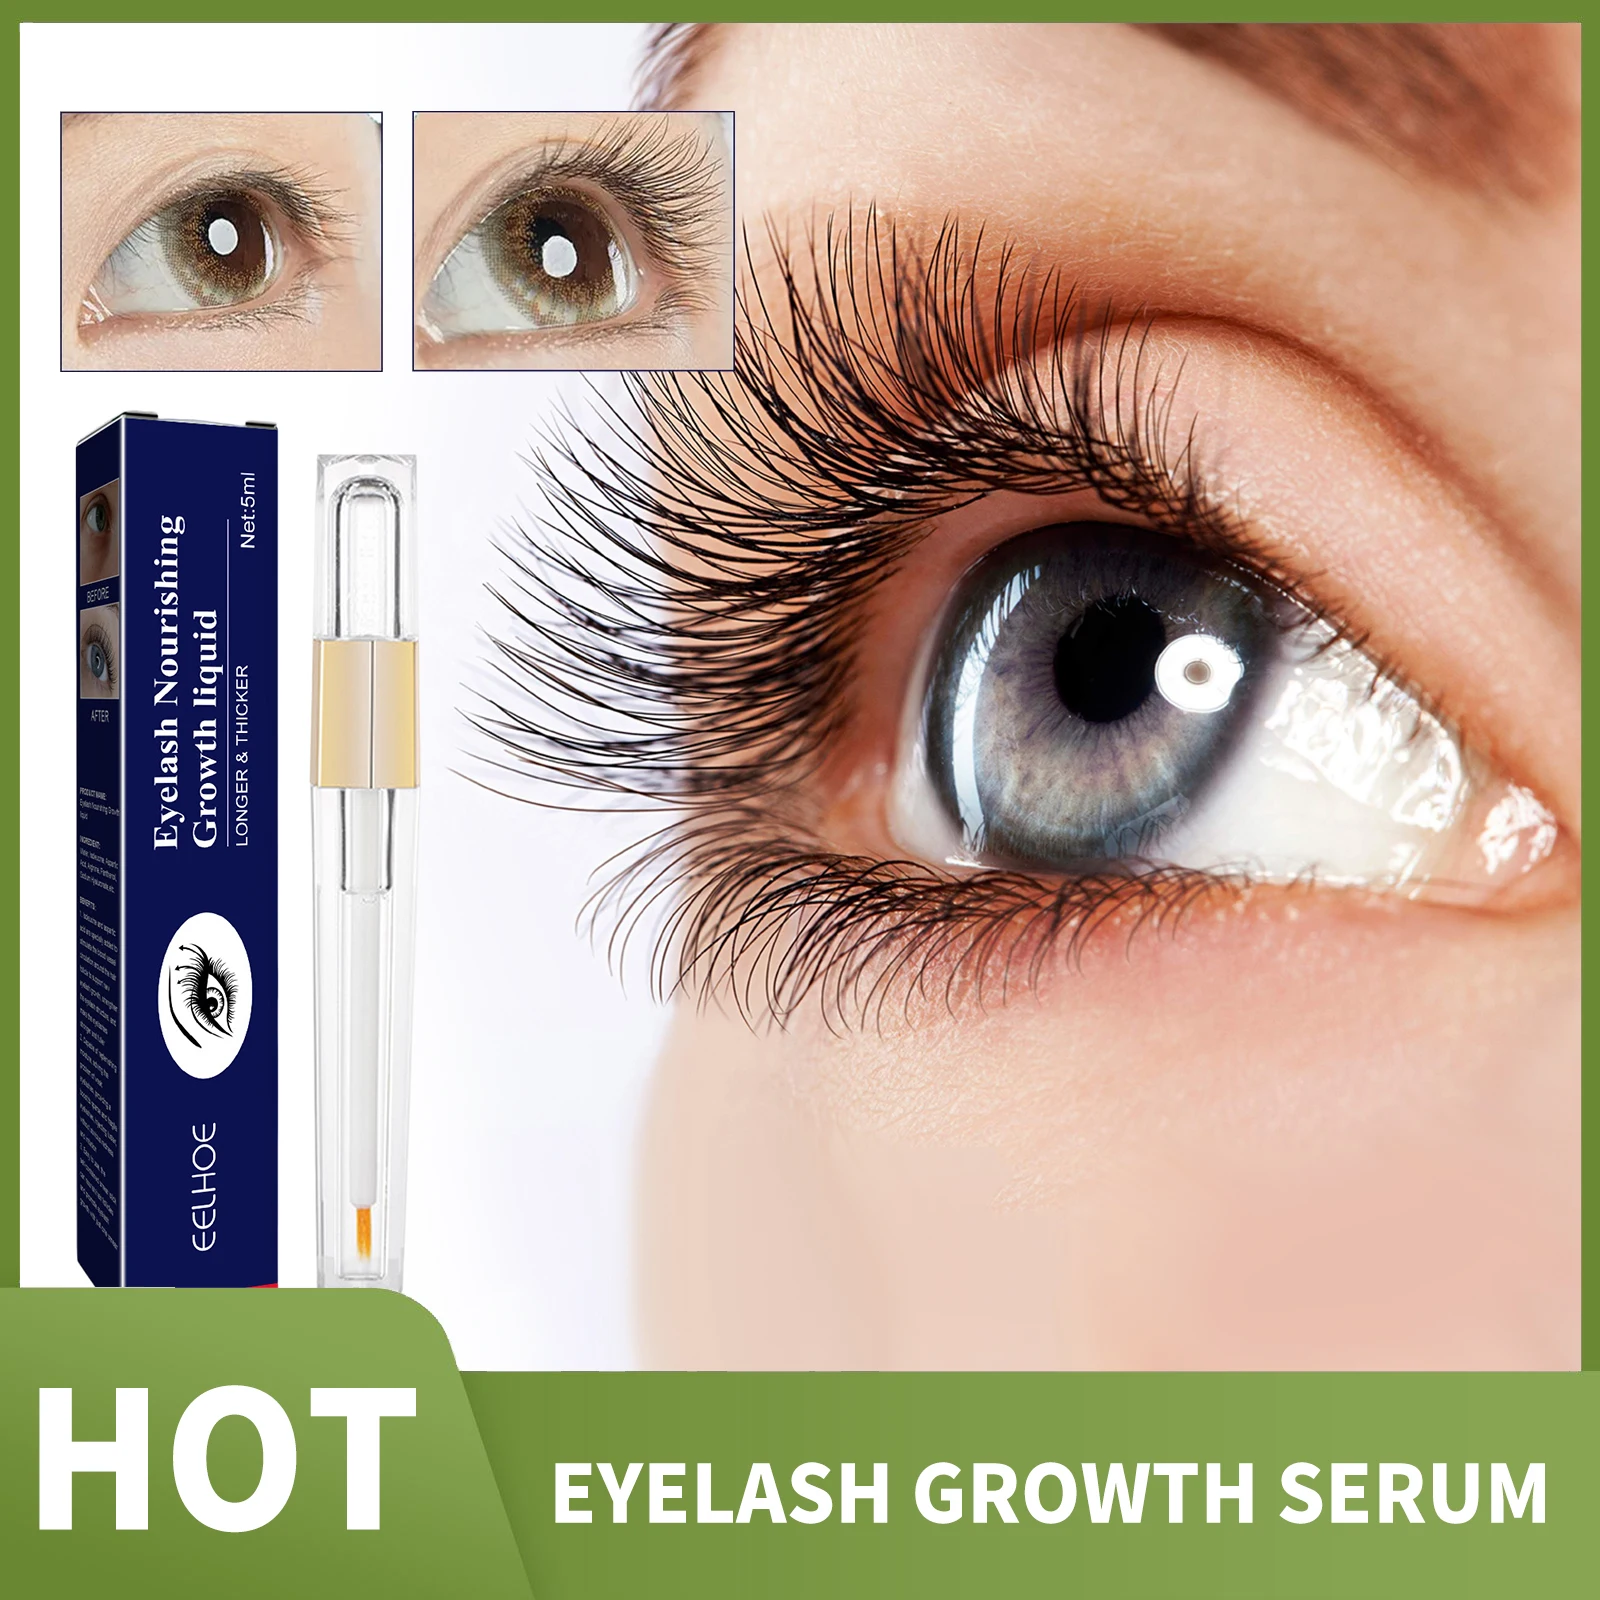 

Fast Eyelash Growth Serum Eyelashes Eyebrows Enhancer Lash Lift Lengthening Nourishing Fuller Thicker Lashes Treatment Eye Care